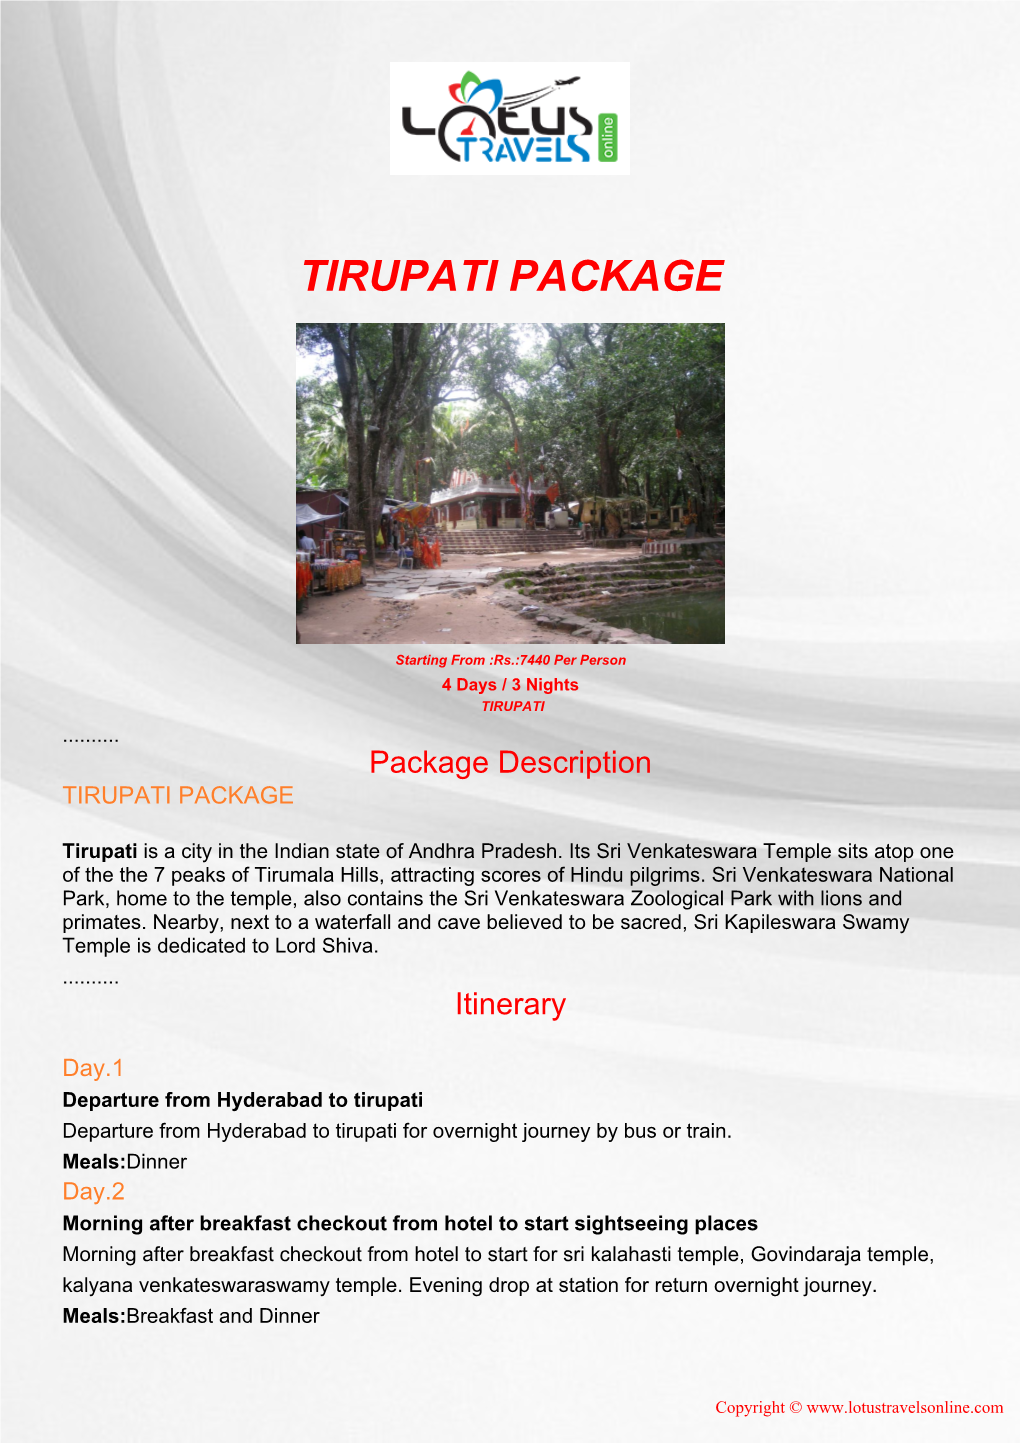 Tirupati Package